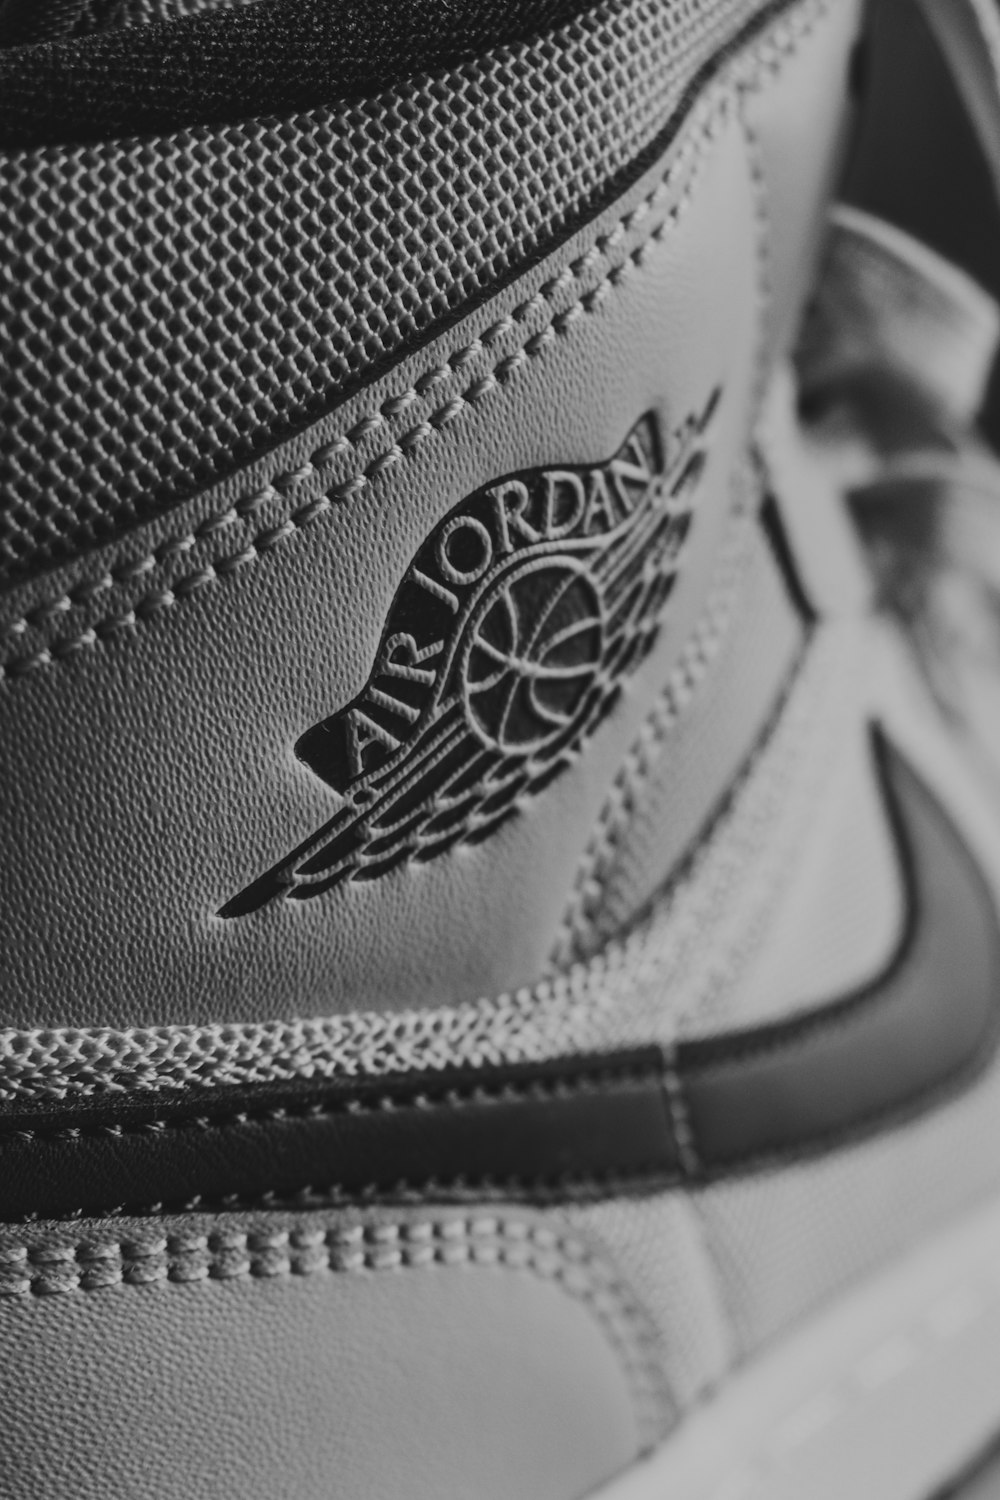 Imágenes de Fotografía Air Jordan | Descarga imágenes gratuitas en Unsplash